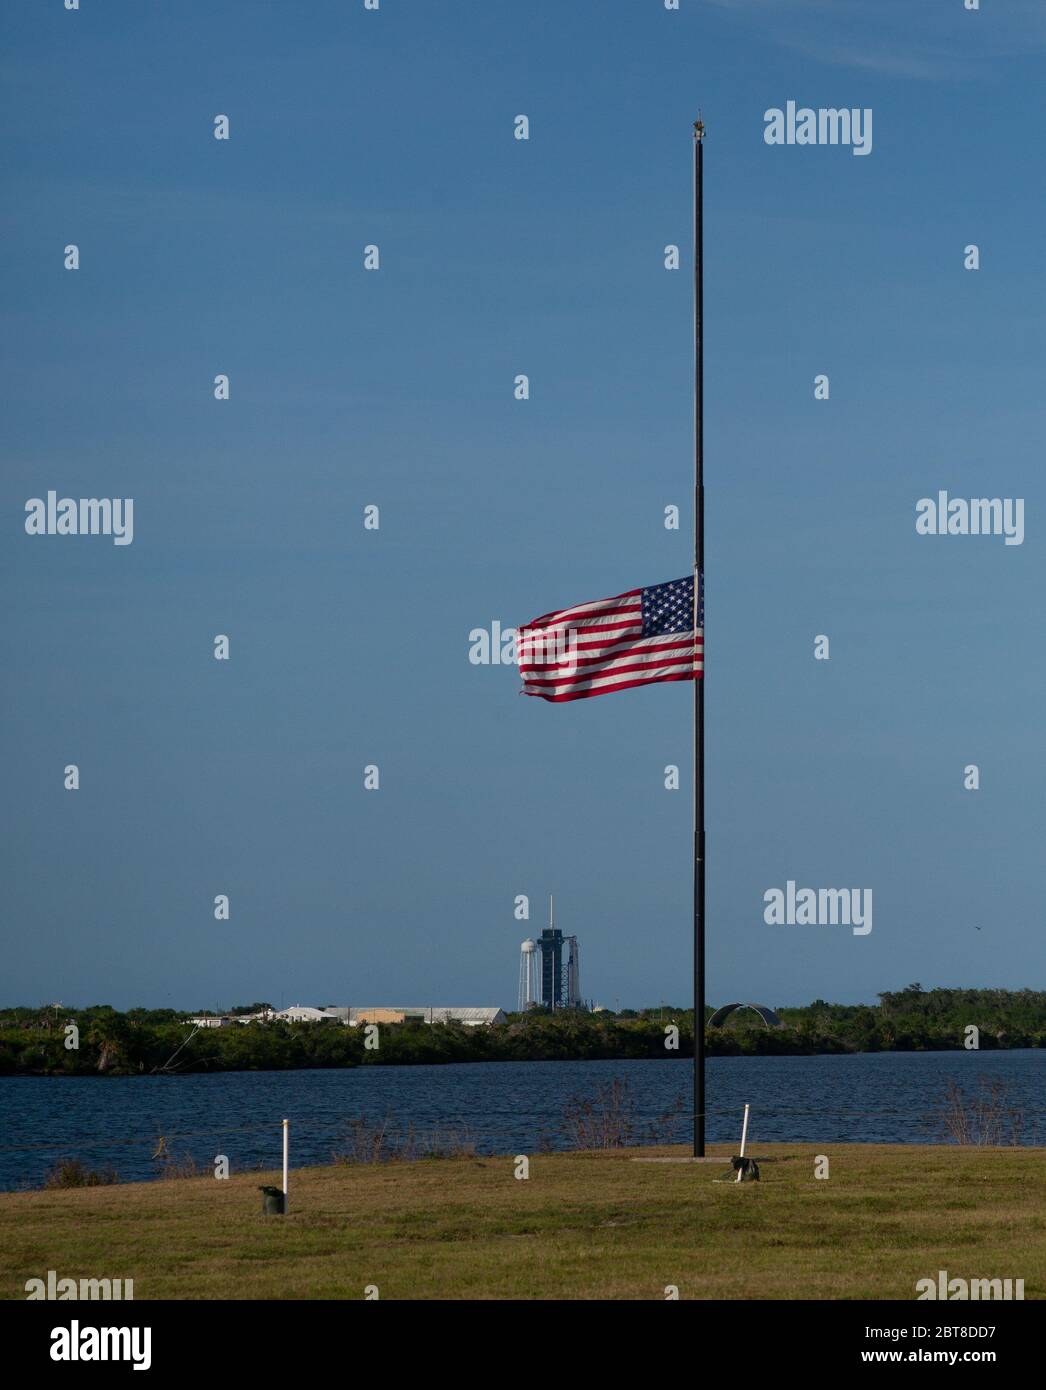 Cape Canaveral, Floride, États-Unis. 22 mai 2020. Le drapeau américain vole à la moitié du personnel à côté de l'horloge du compte à rebours au site de presse du Kennedy Space Center de la NASA, le 22 mai 2020, en Floride. Le président Donald Trump a ordonné jeudi que les drapeaux soient abaissés à moitié d'employés jusqu'au coucher du soleil le 24 mai, « comme marque de respect solennel pour les victimes de la pandémie du coronavirus ». La mission SpaceX Demo-2 de la NASA est le premier lancement avec les astronautes du vaisseau spatial SpaceX Crew Dragon et de la fusée Falcon 9 vers la Station spatiale internationale dans le cadre du programme d'équipage commercial de l'agence. Crédit : UPI/Alay Live News Banque D'Images